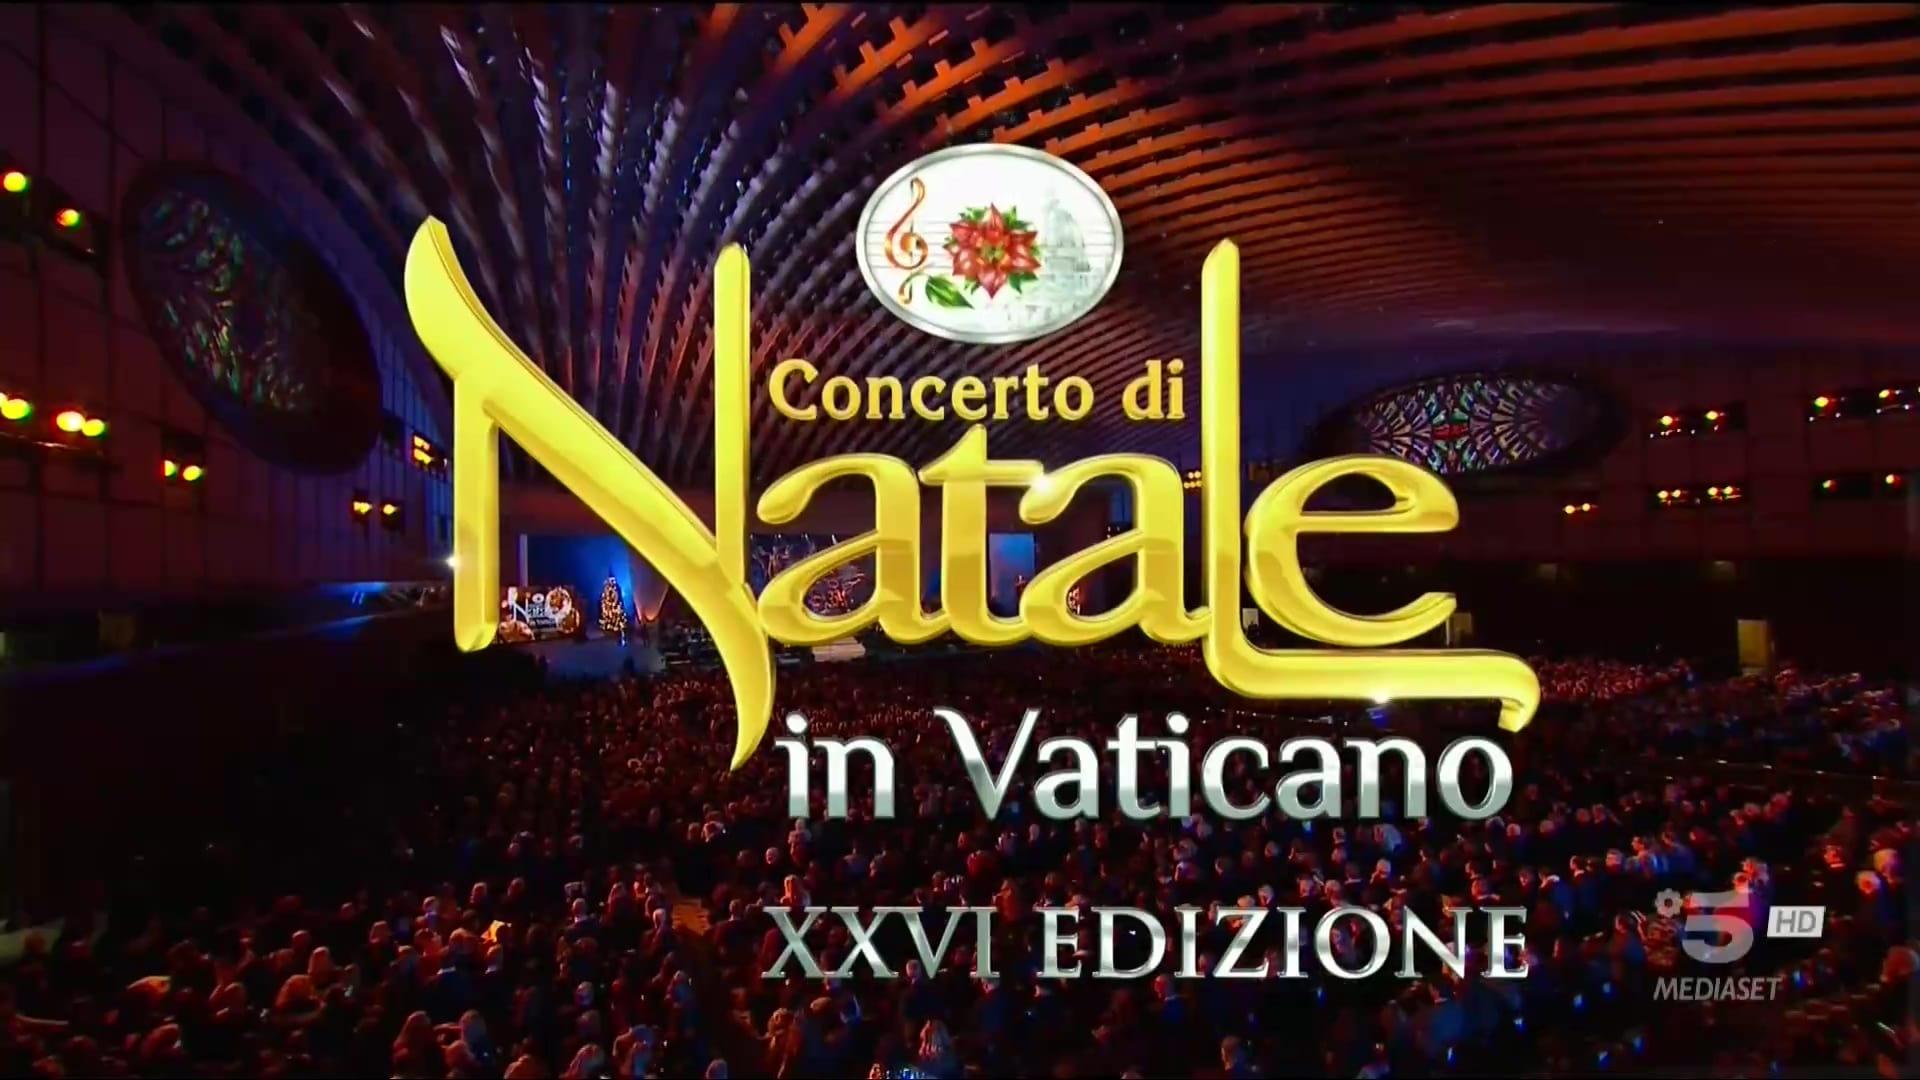 Concerto di Natale in Vaticano 2019 backdrop